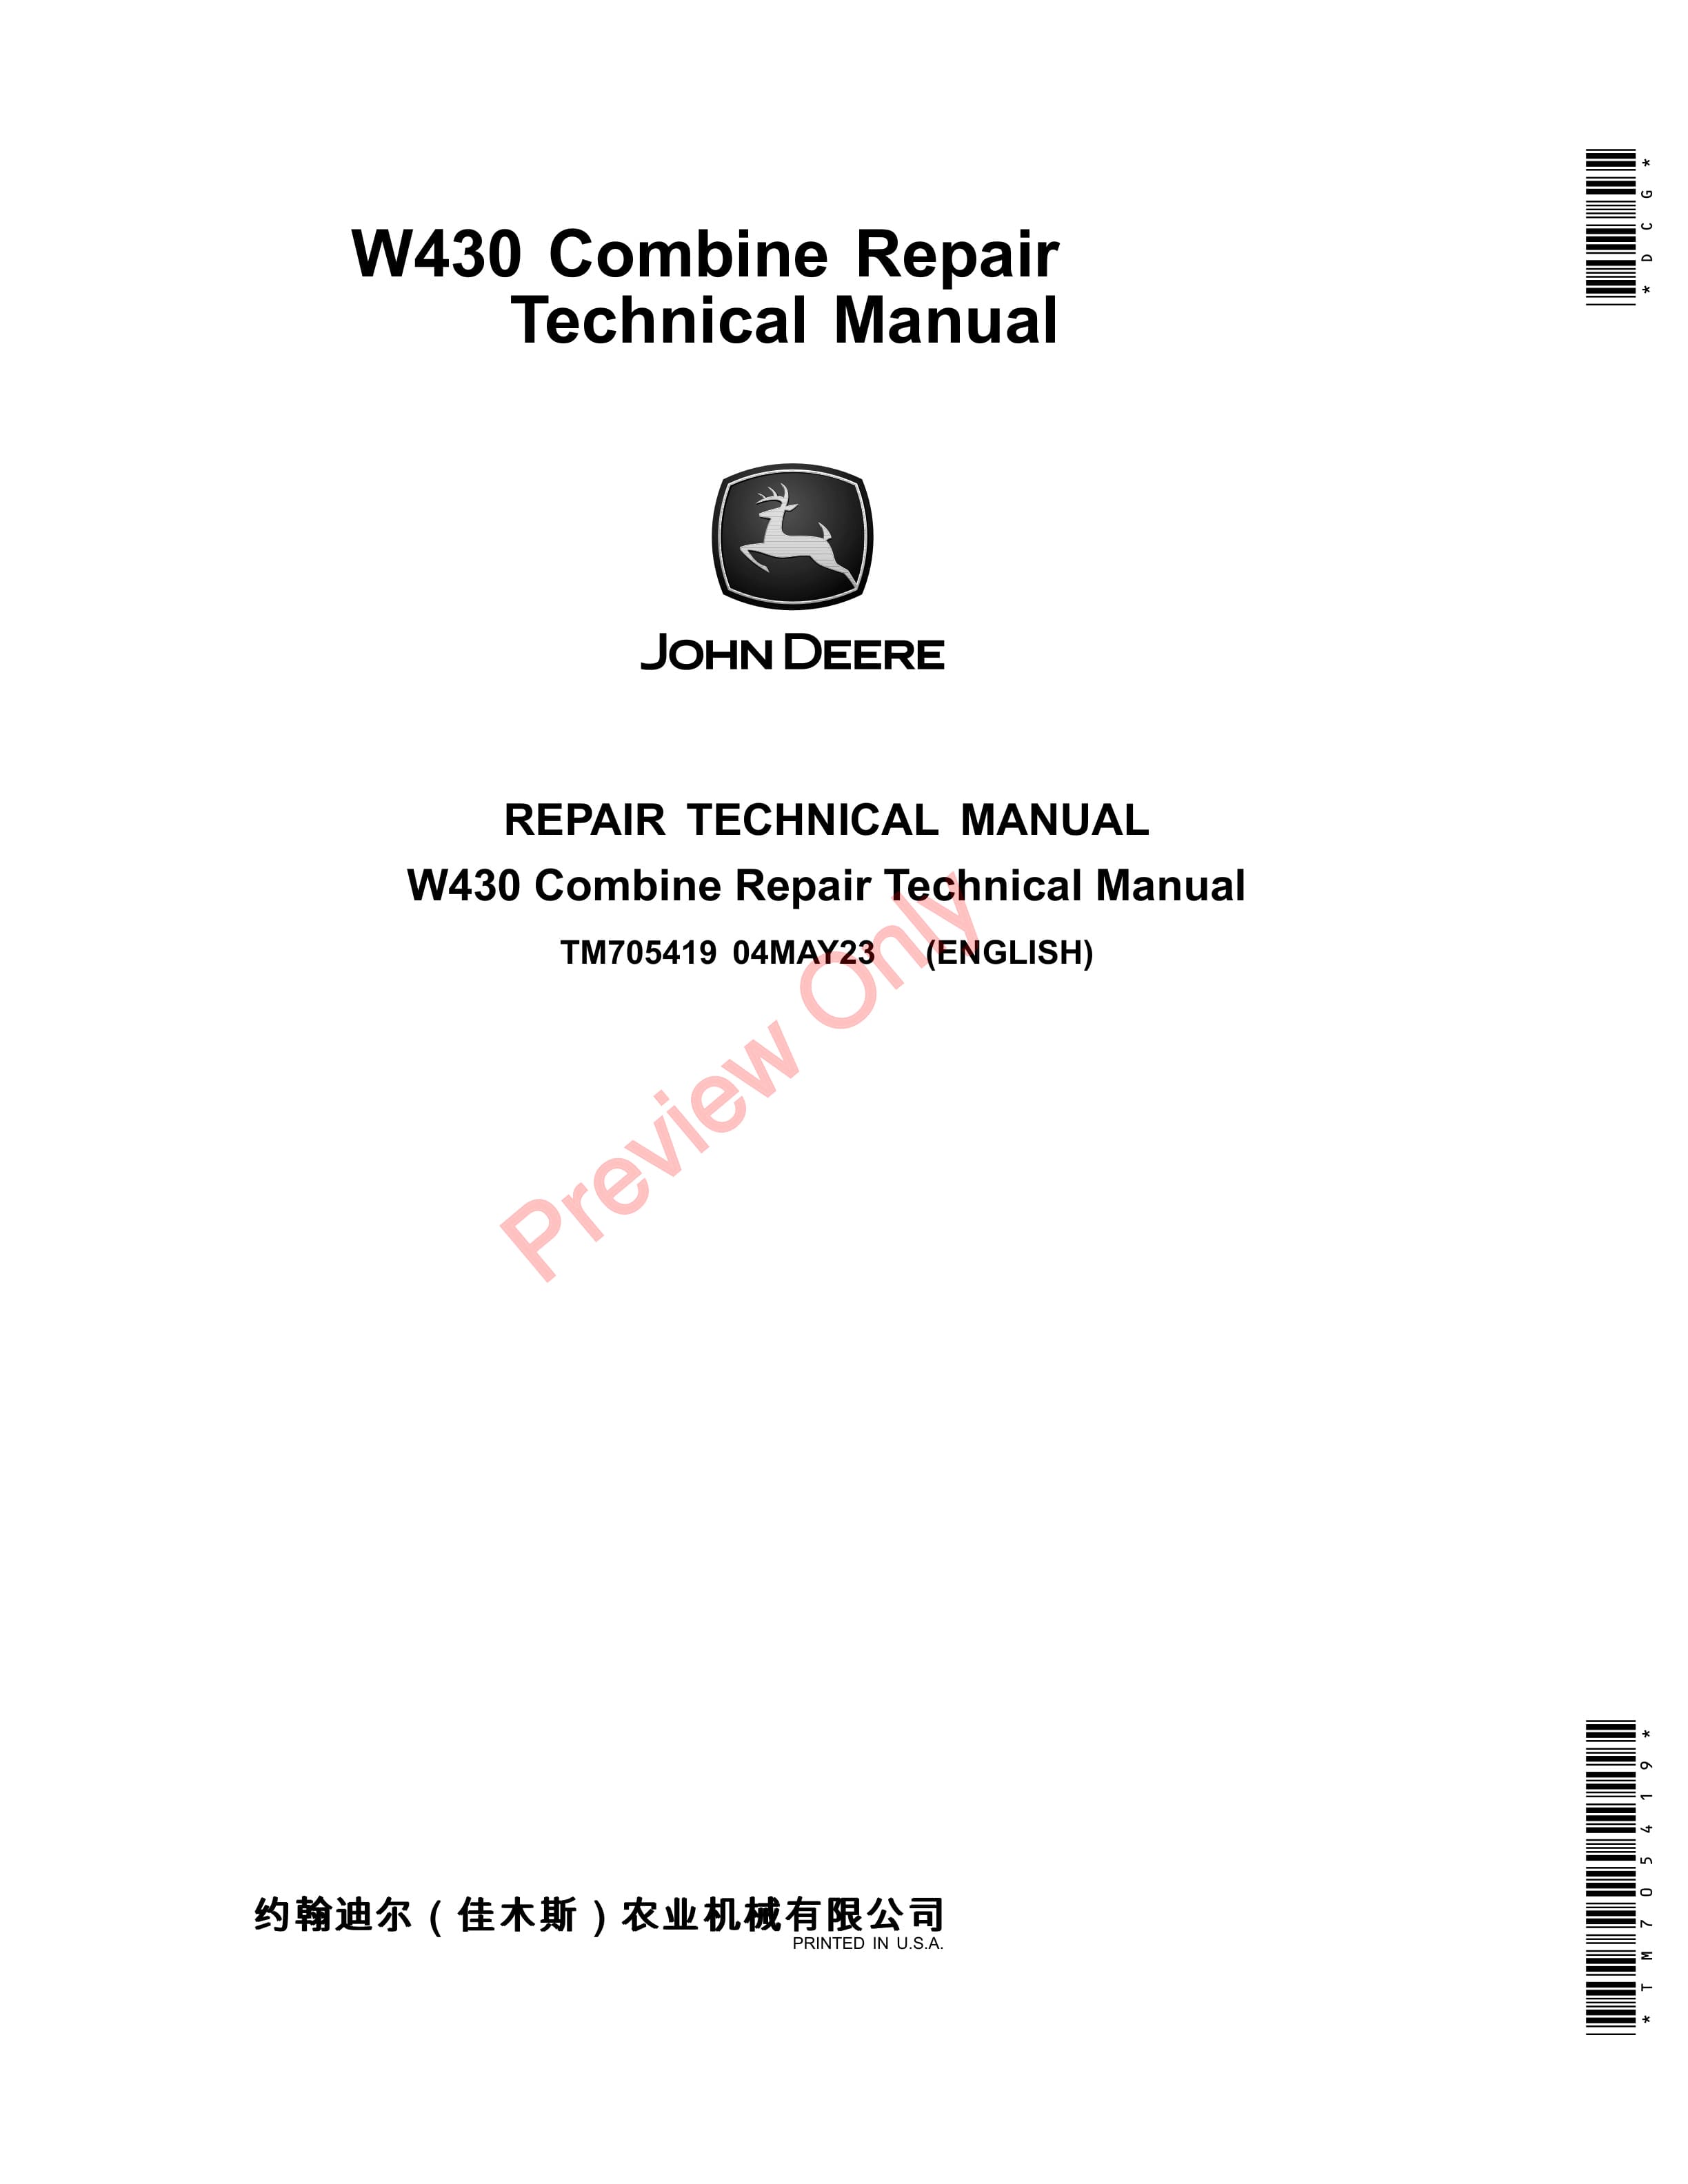 John Deere W430 Combine 035001 999999 Repair Technical Manual TM705419 04MAY23 1